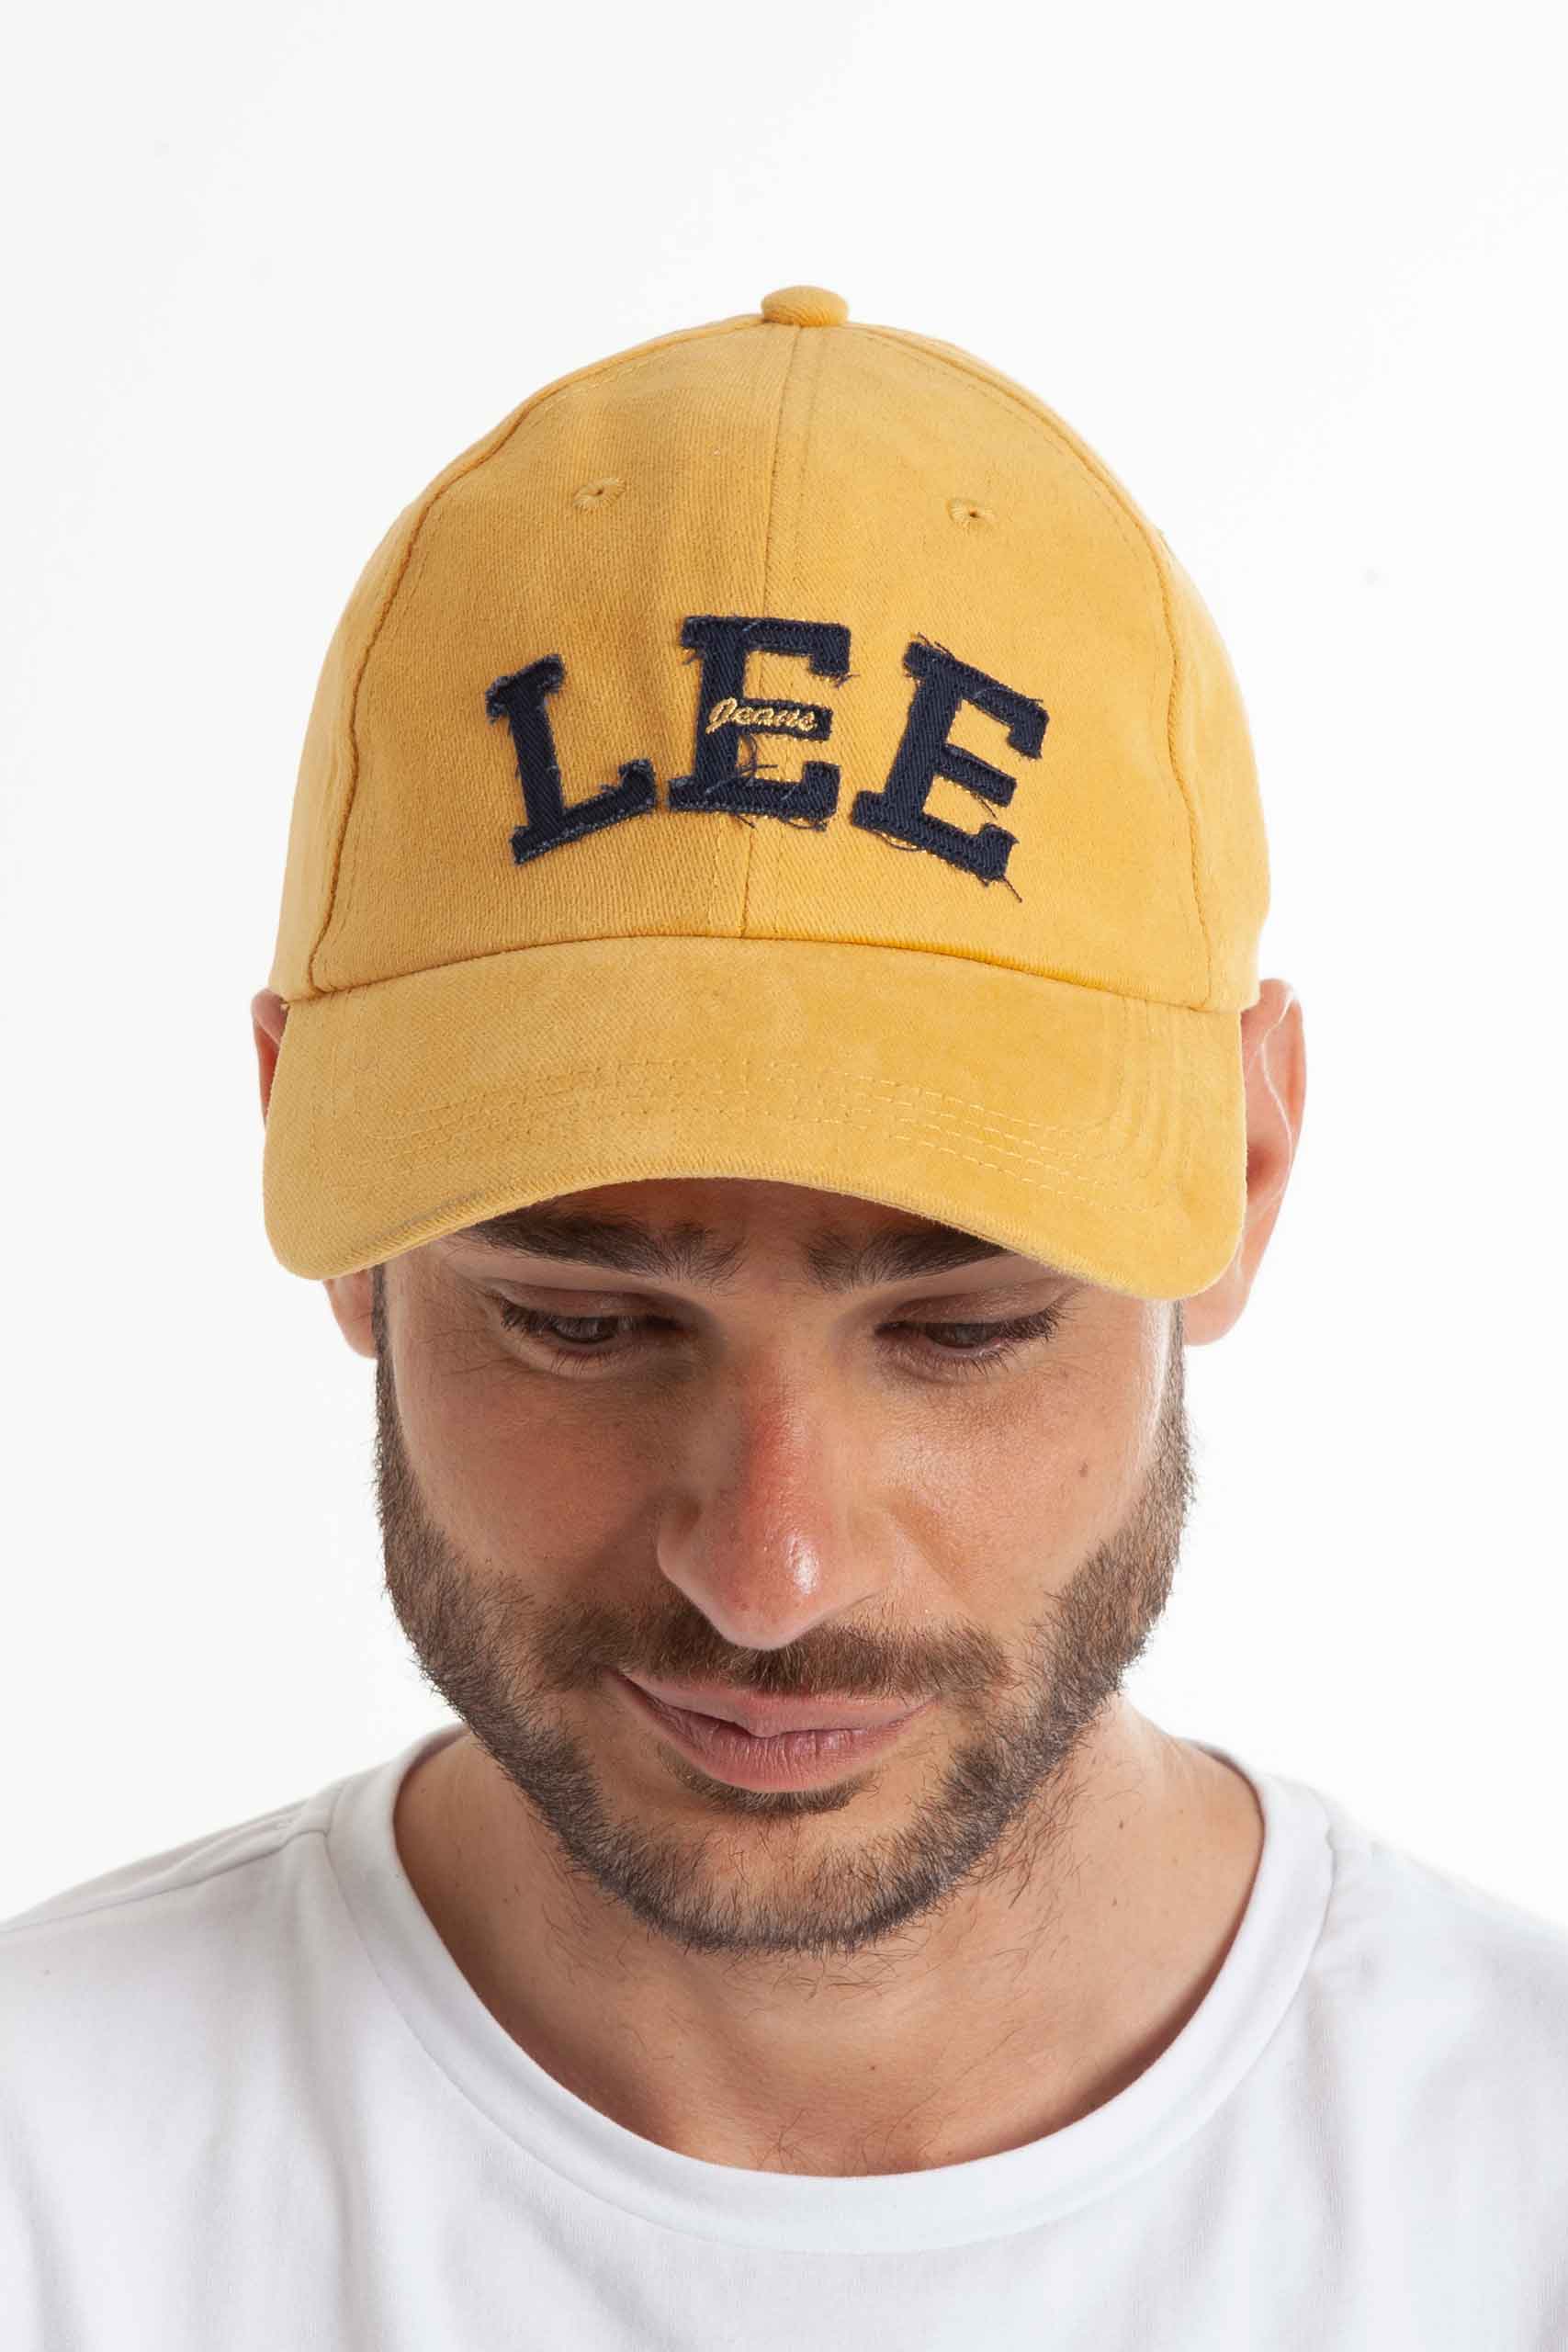 Vista frontal de gorra de color mostaza de marca lee